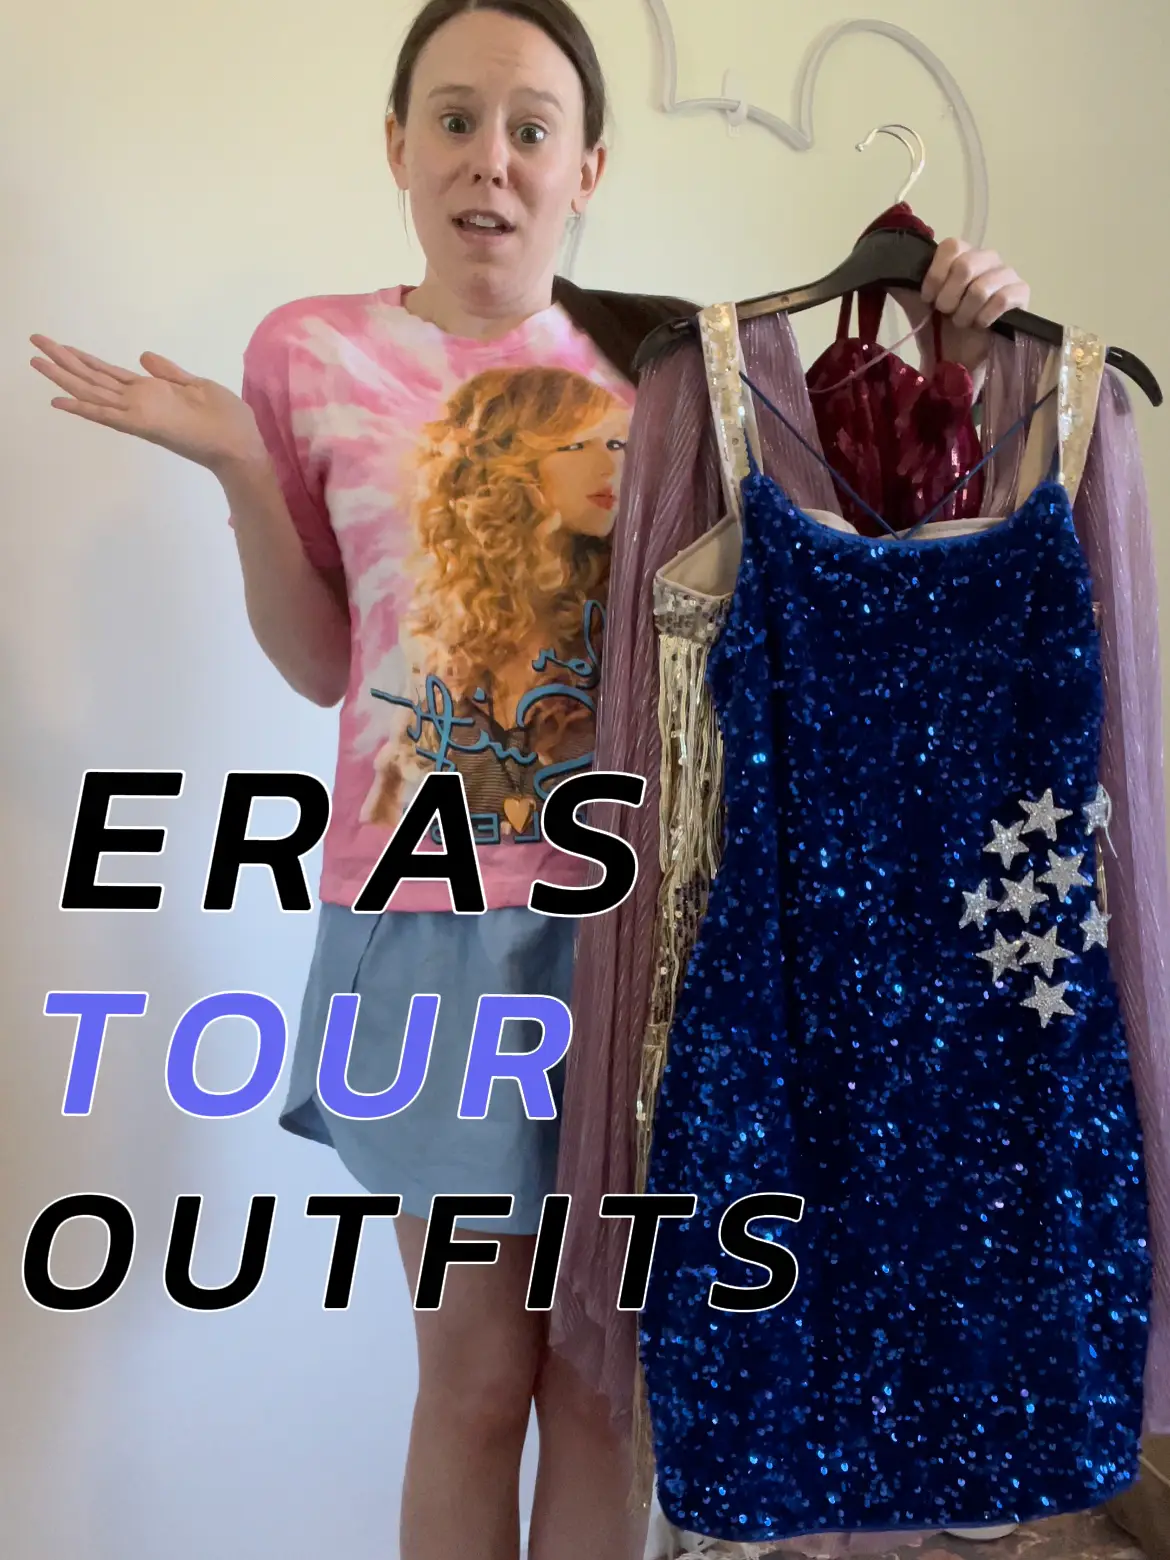 Era’s Tour Outfit Inspo!'s images